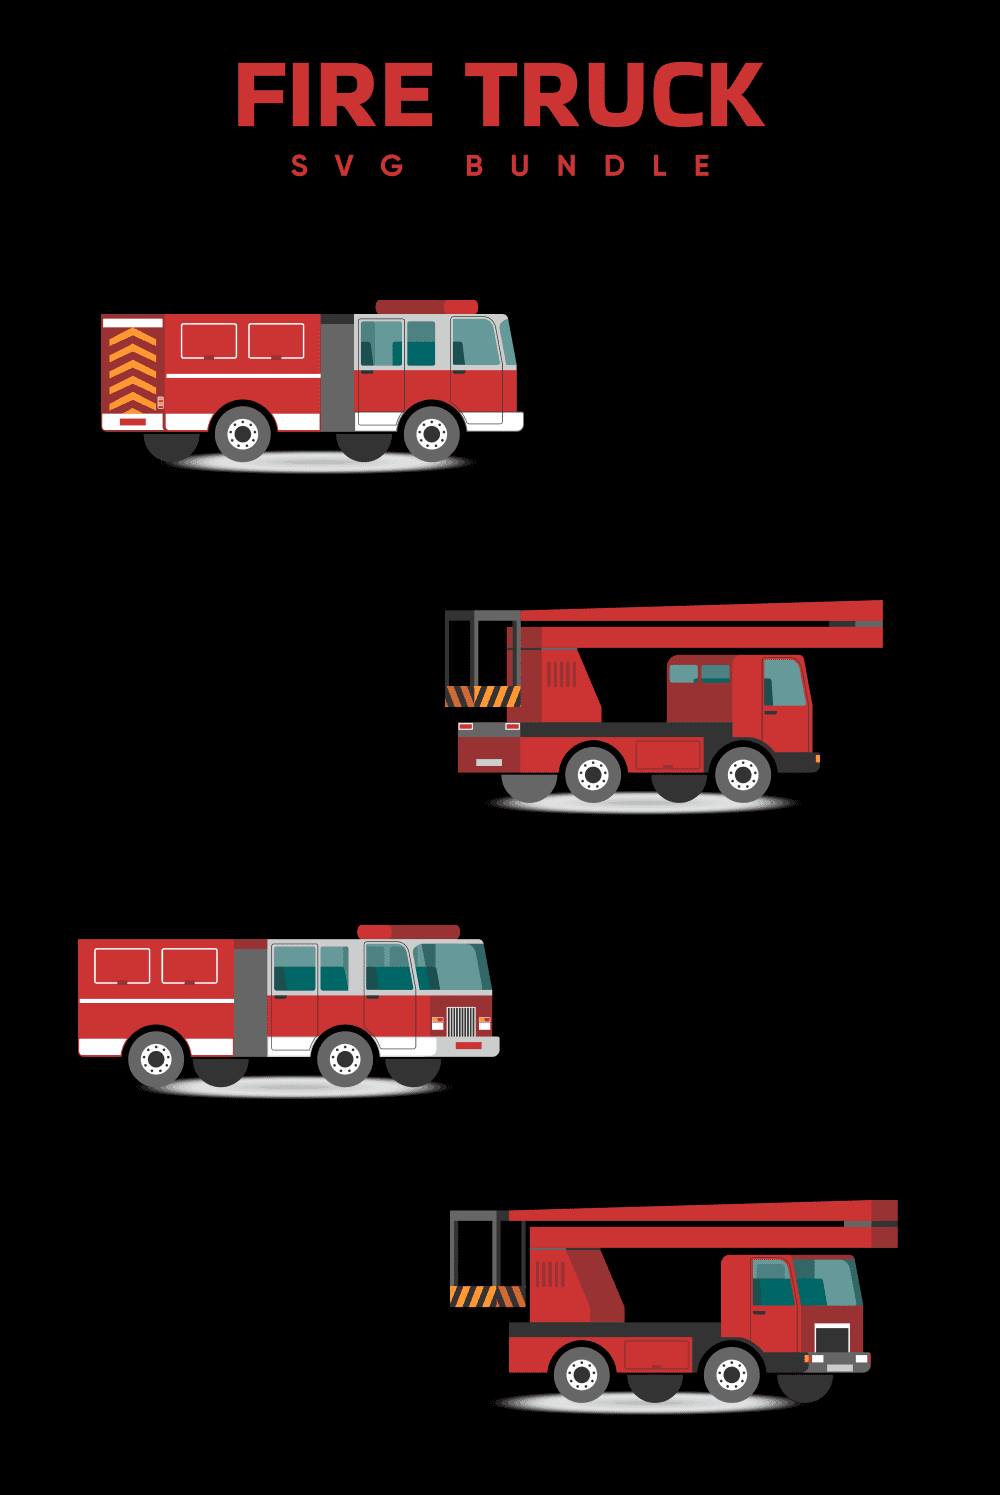 Fire Truck Svg - Pinterest.